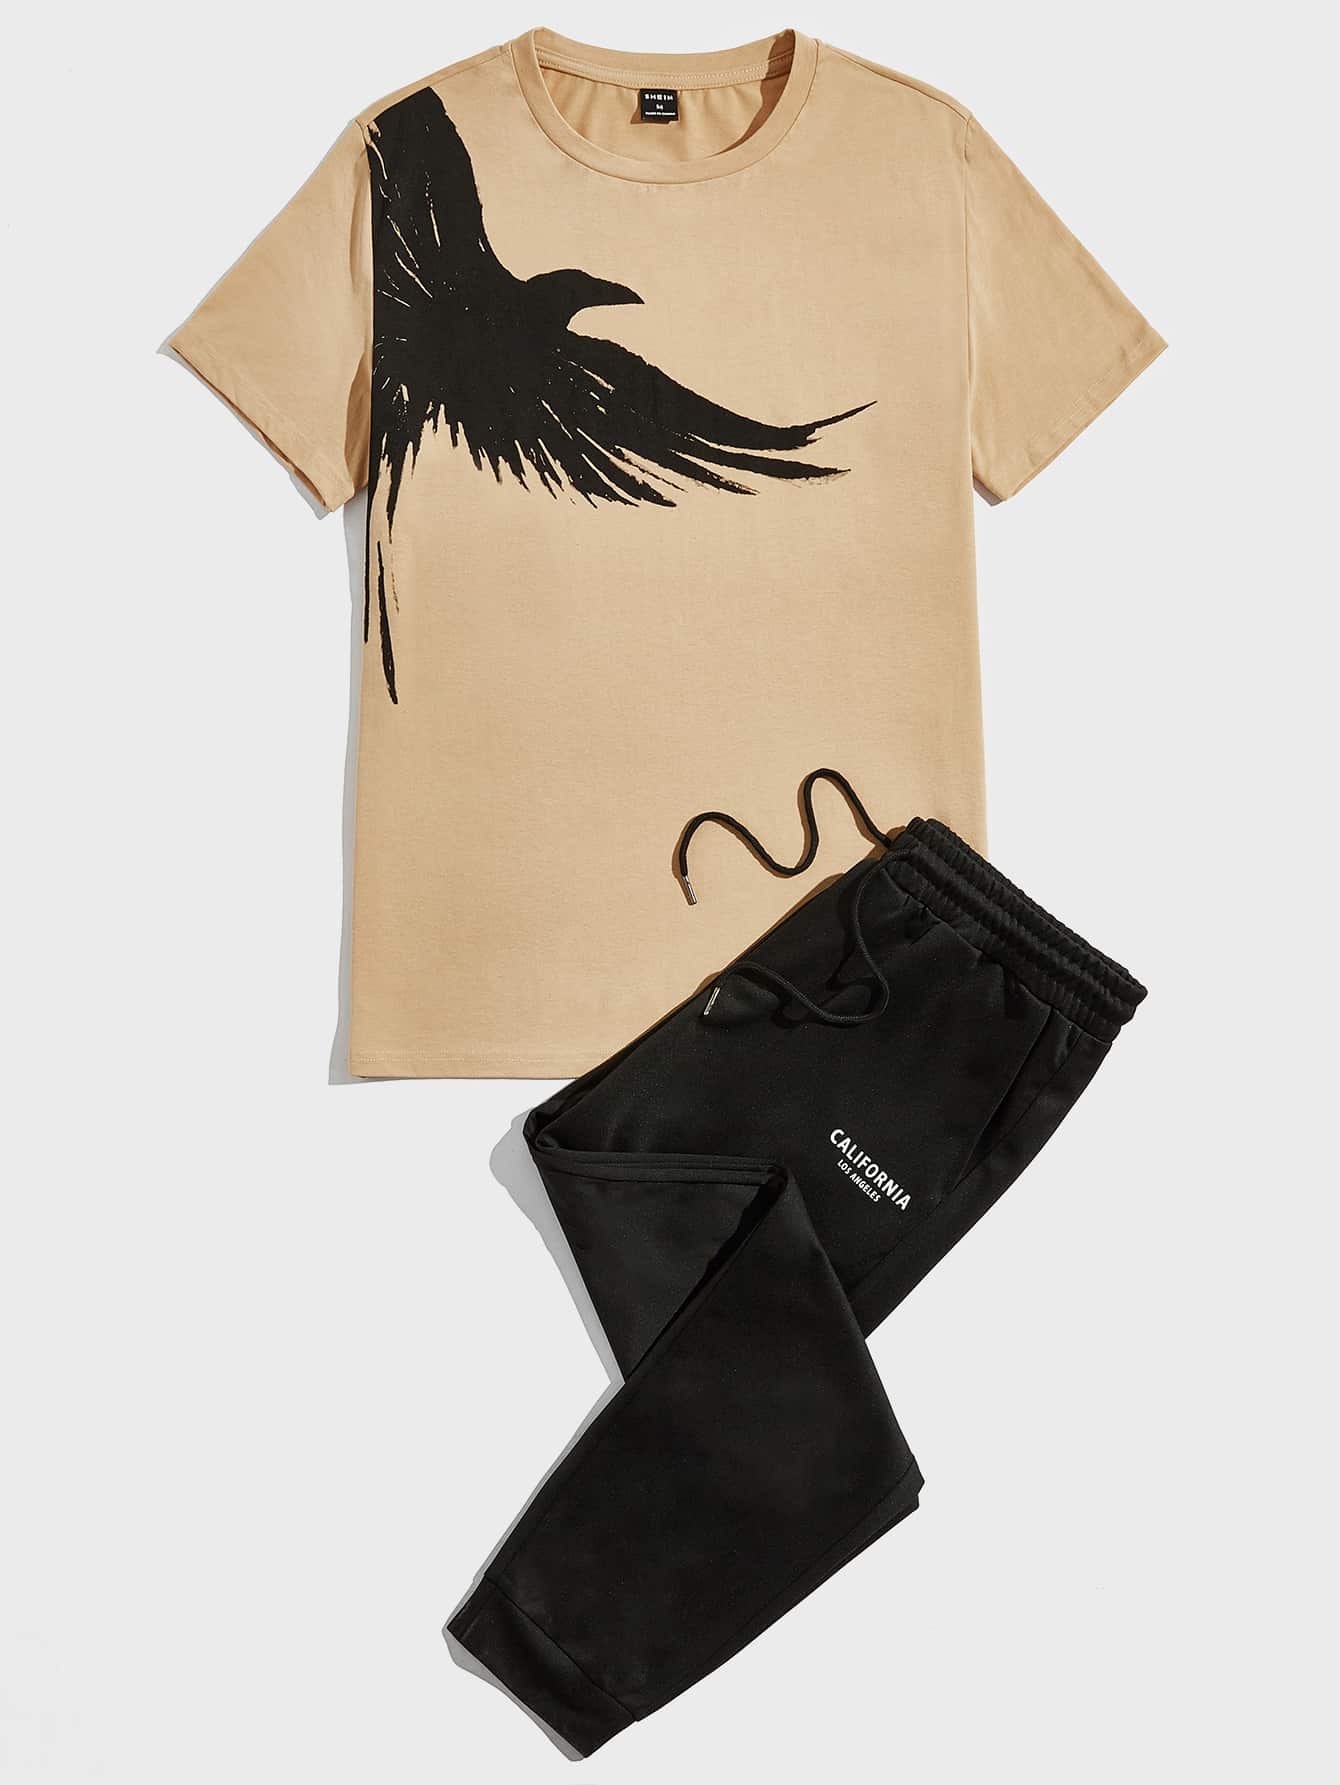 Мужской вязаный комплект из топа и брюк с короткими рукавами Manfinity Homme с принтом птиц, хаки